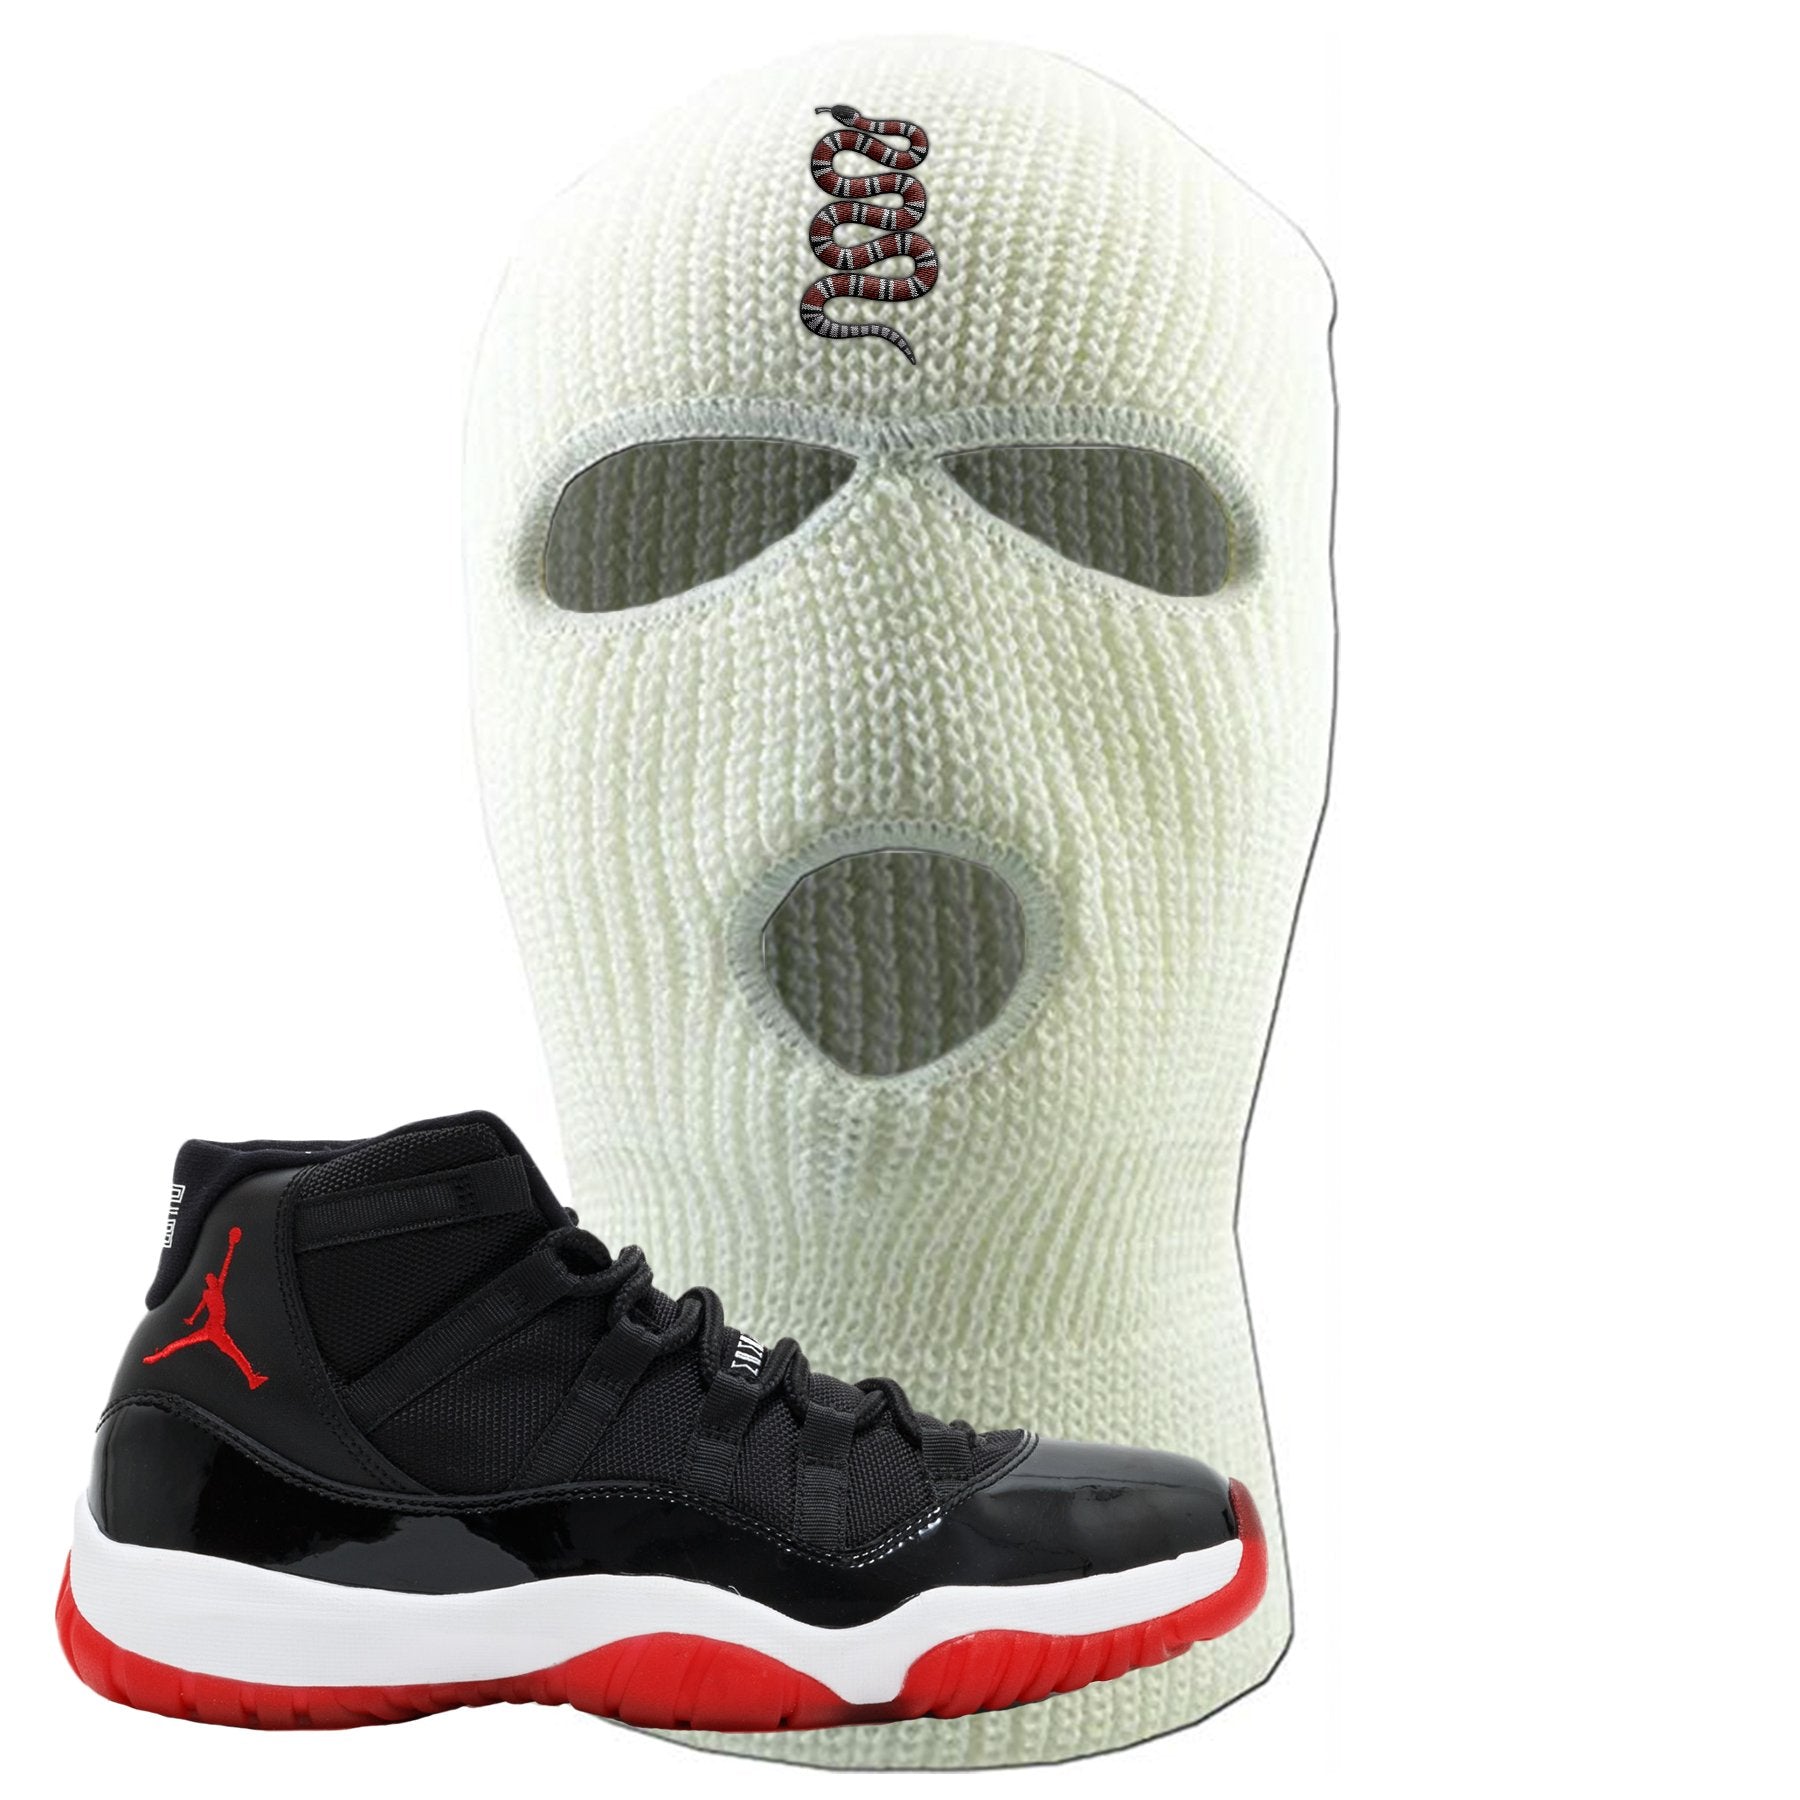 Jordan 11 Bred Coiled Snake White Sneaker Hook Up Ski Mask